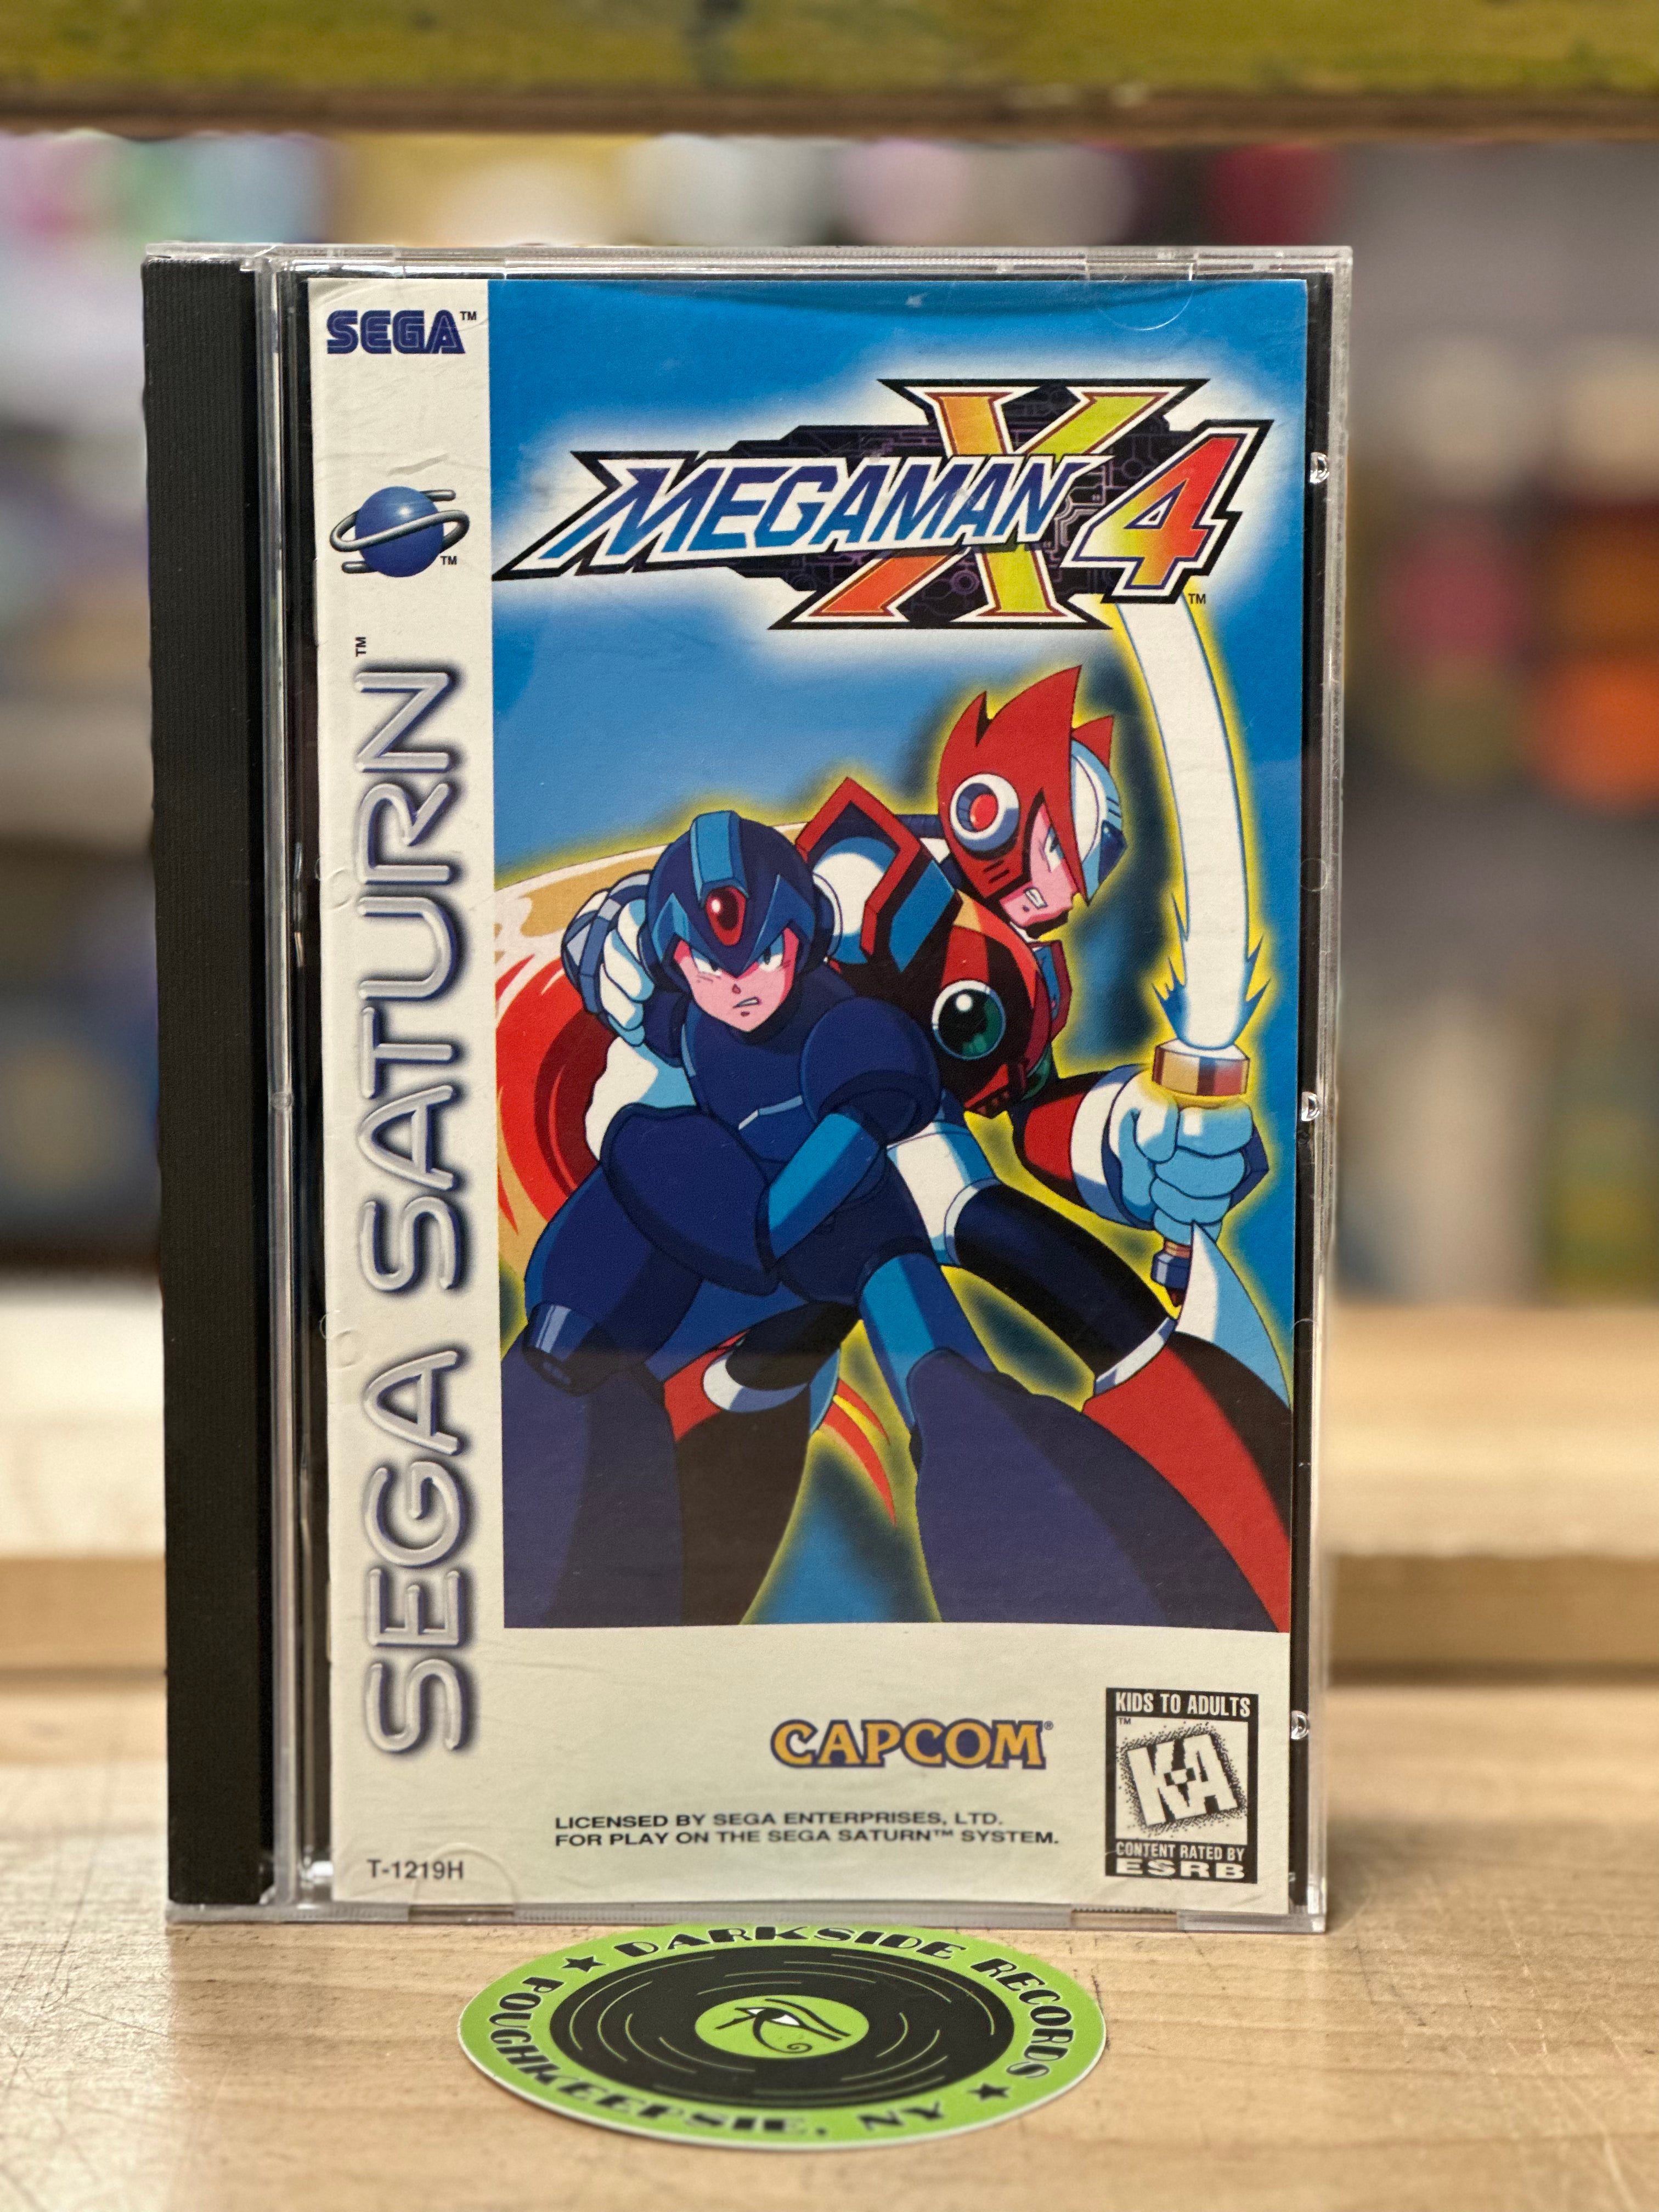 Megaman X4